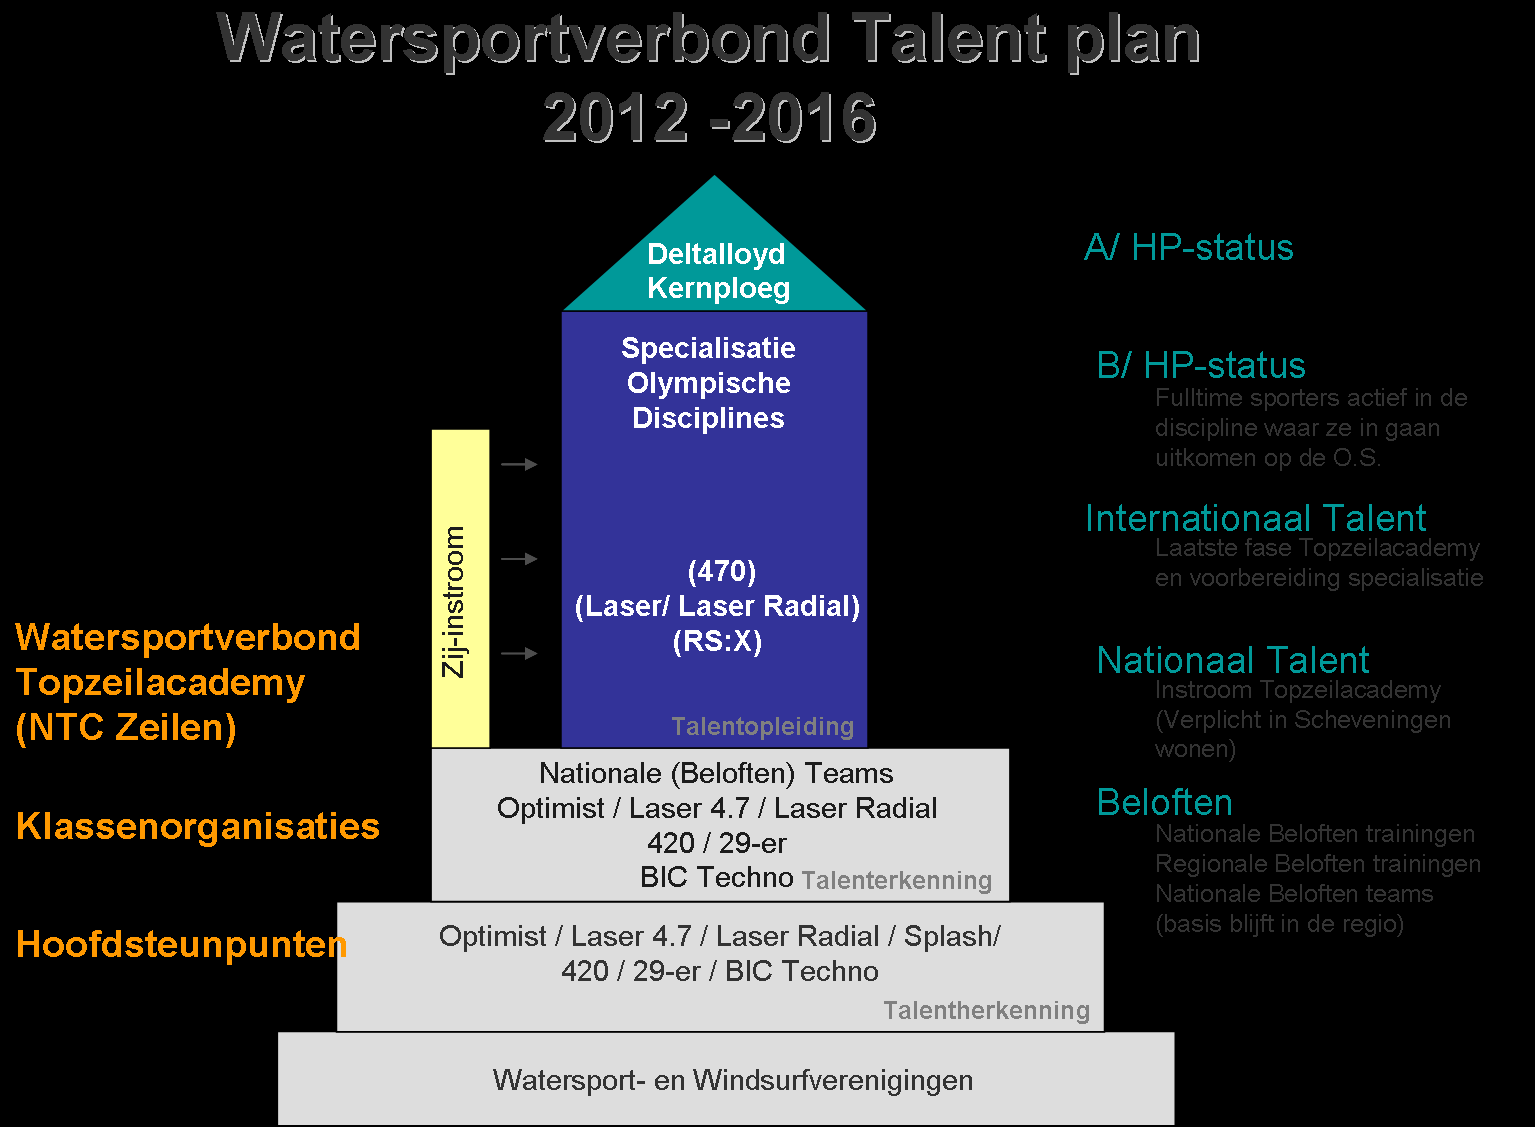 Hoe ziet dit er schematisch uit? Allereerst een model wat gebruikt wordt voor het Talentplan in zijn geheel.